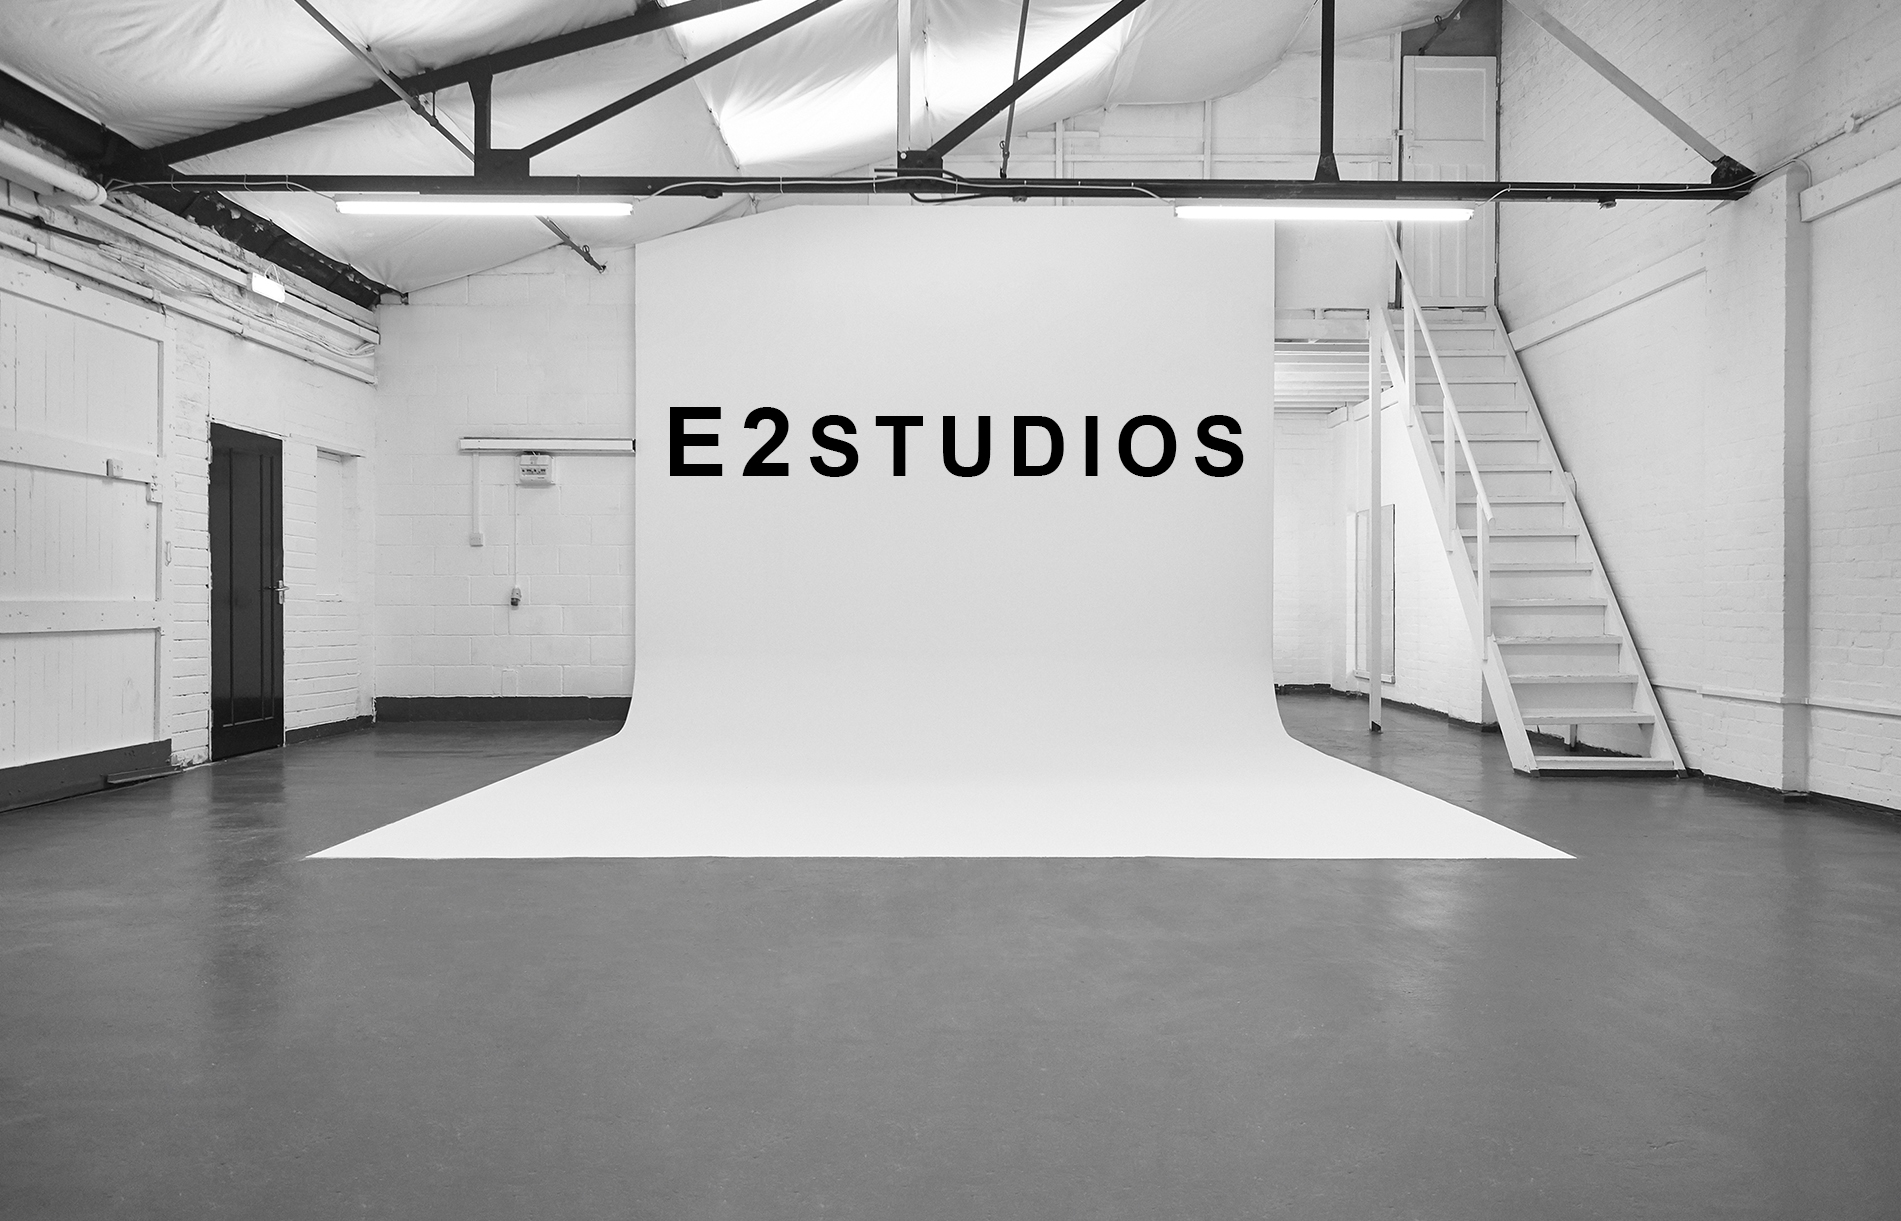 E2 Studios